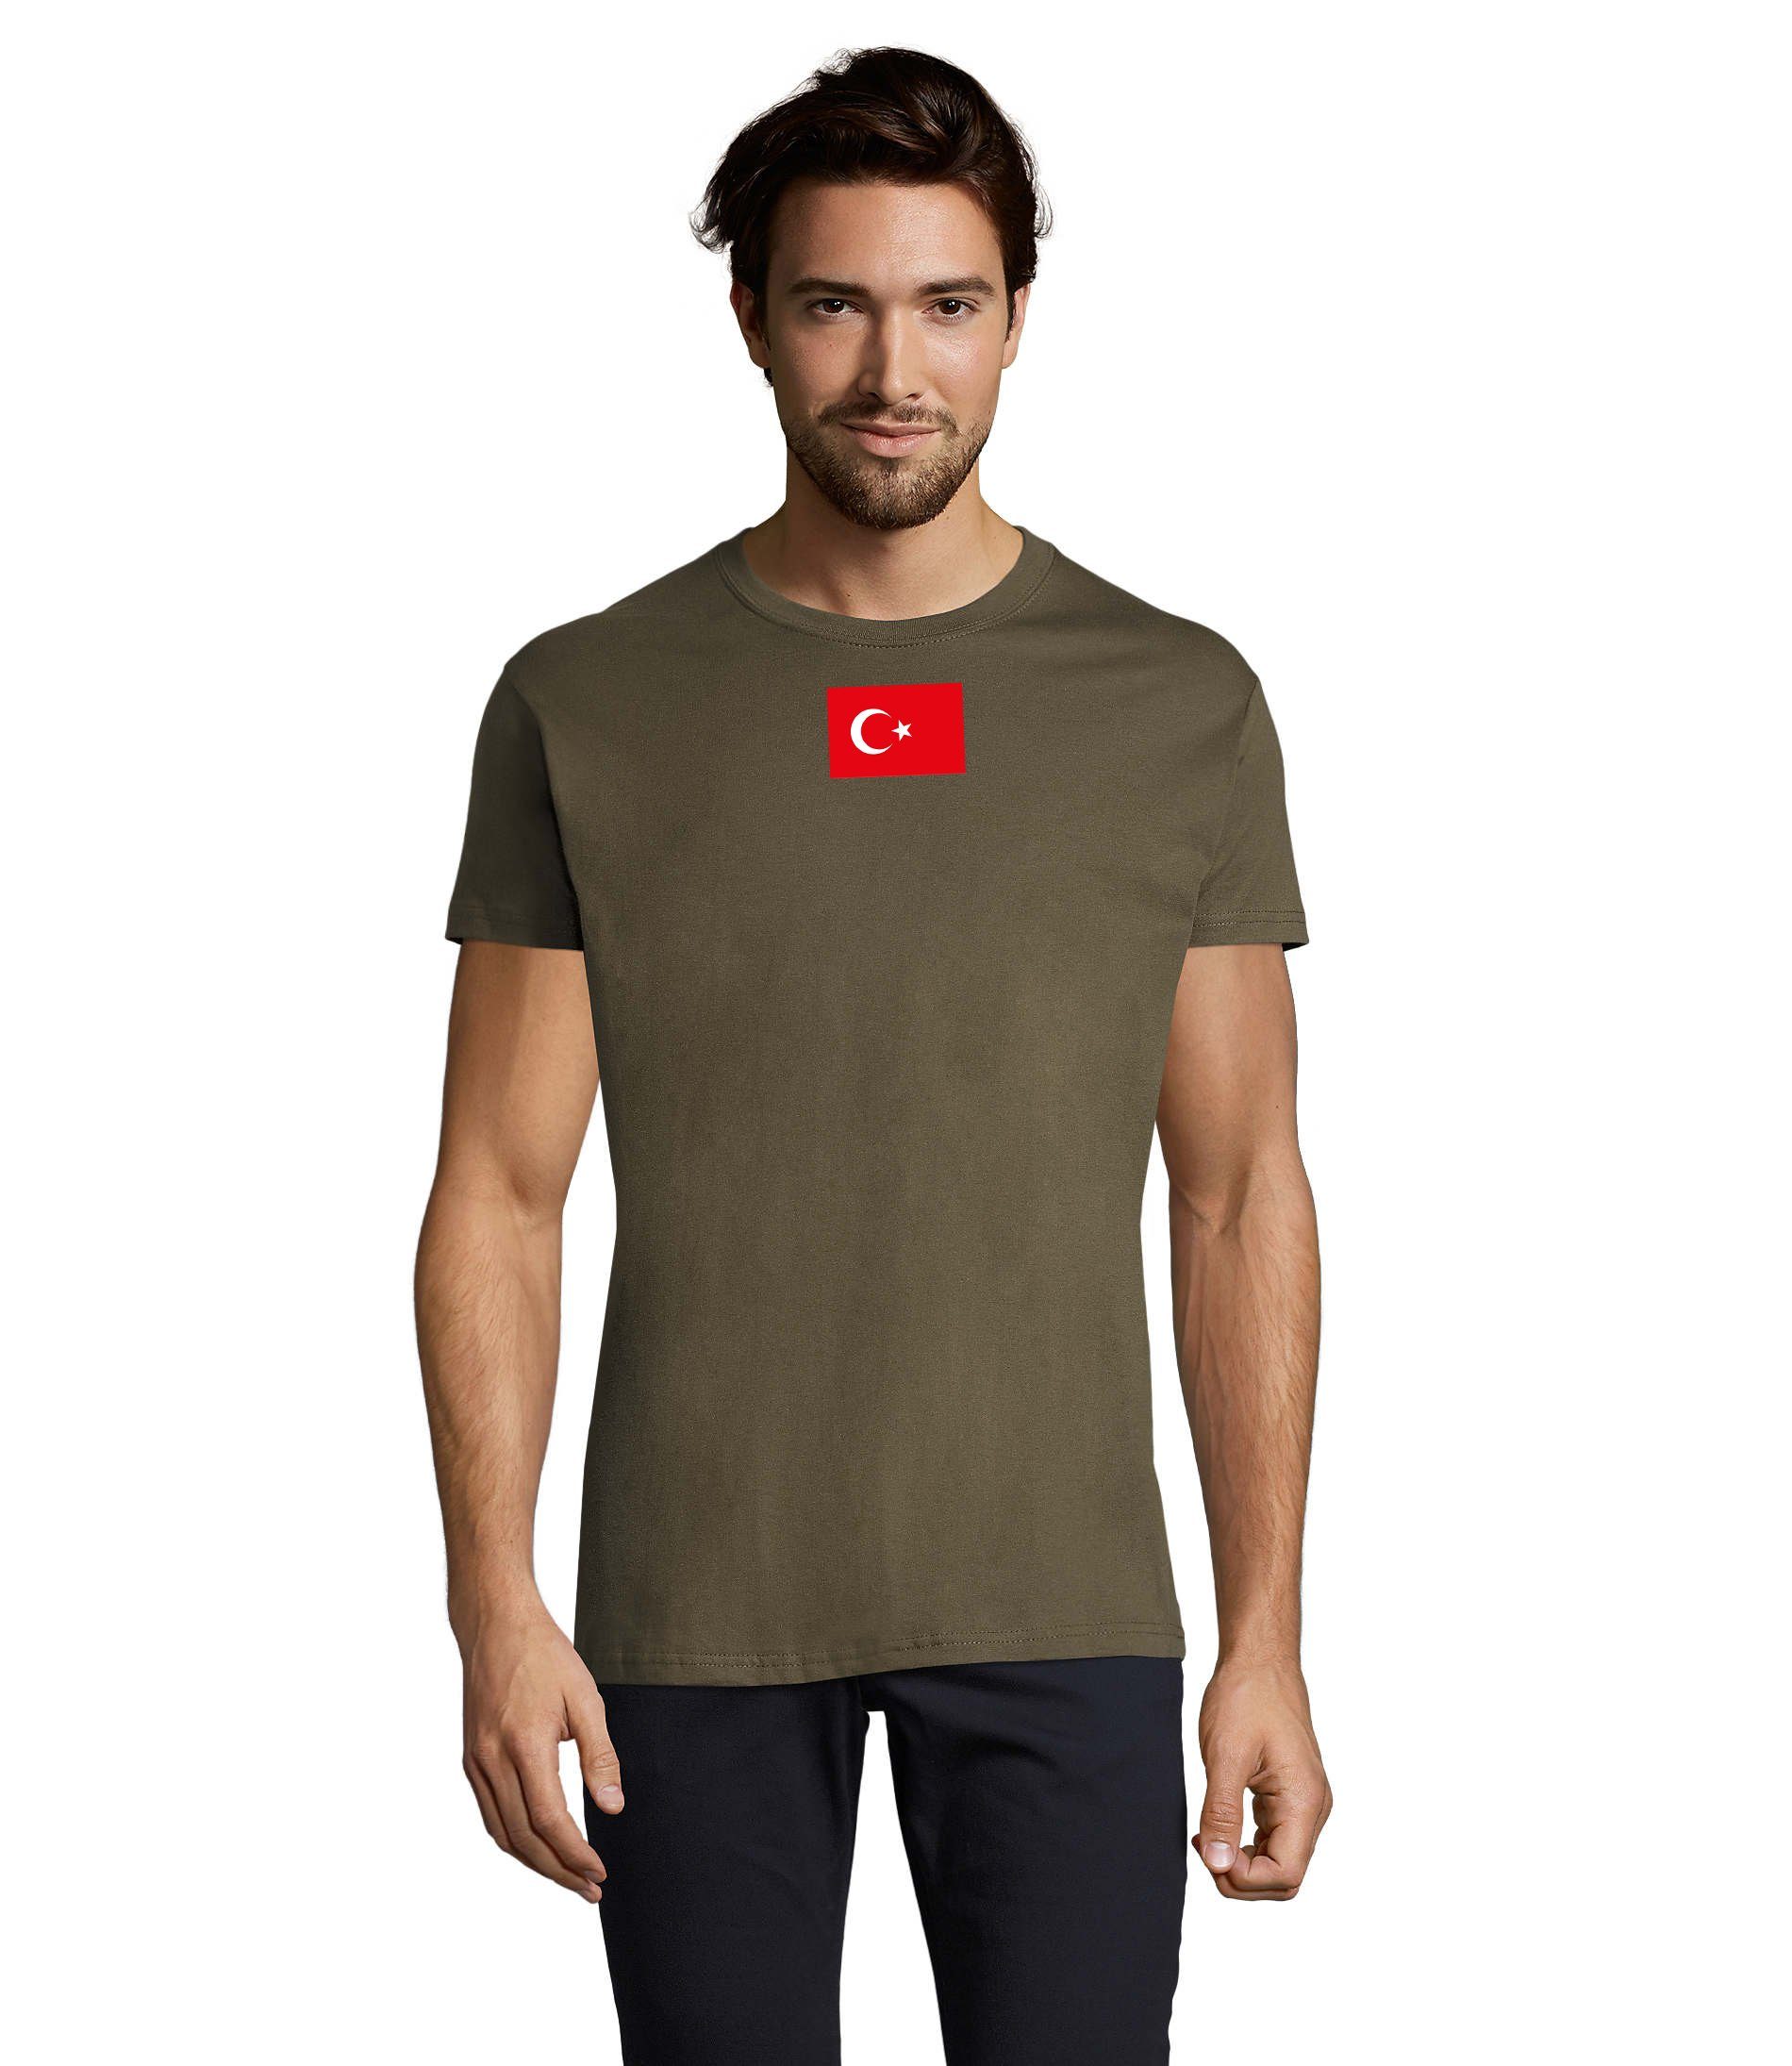 Armee Turkey Brownie Peace Army Herren Türkei Force Air Blondie Ukraine USA Nato & T-Shirt